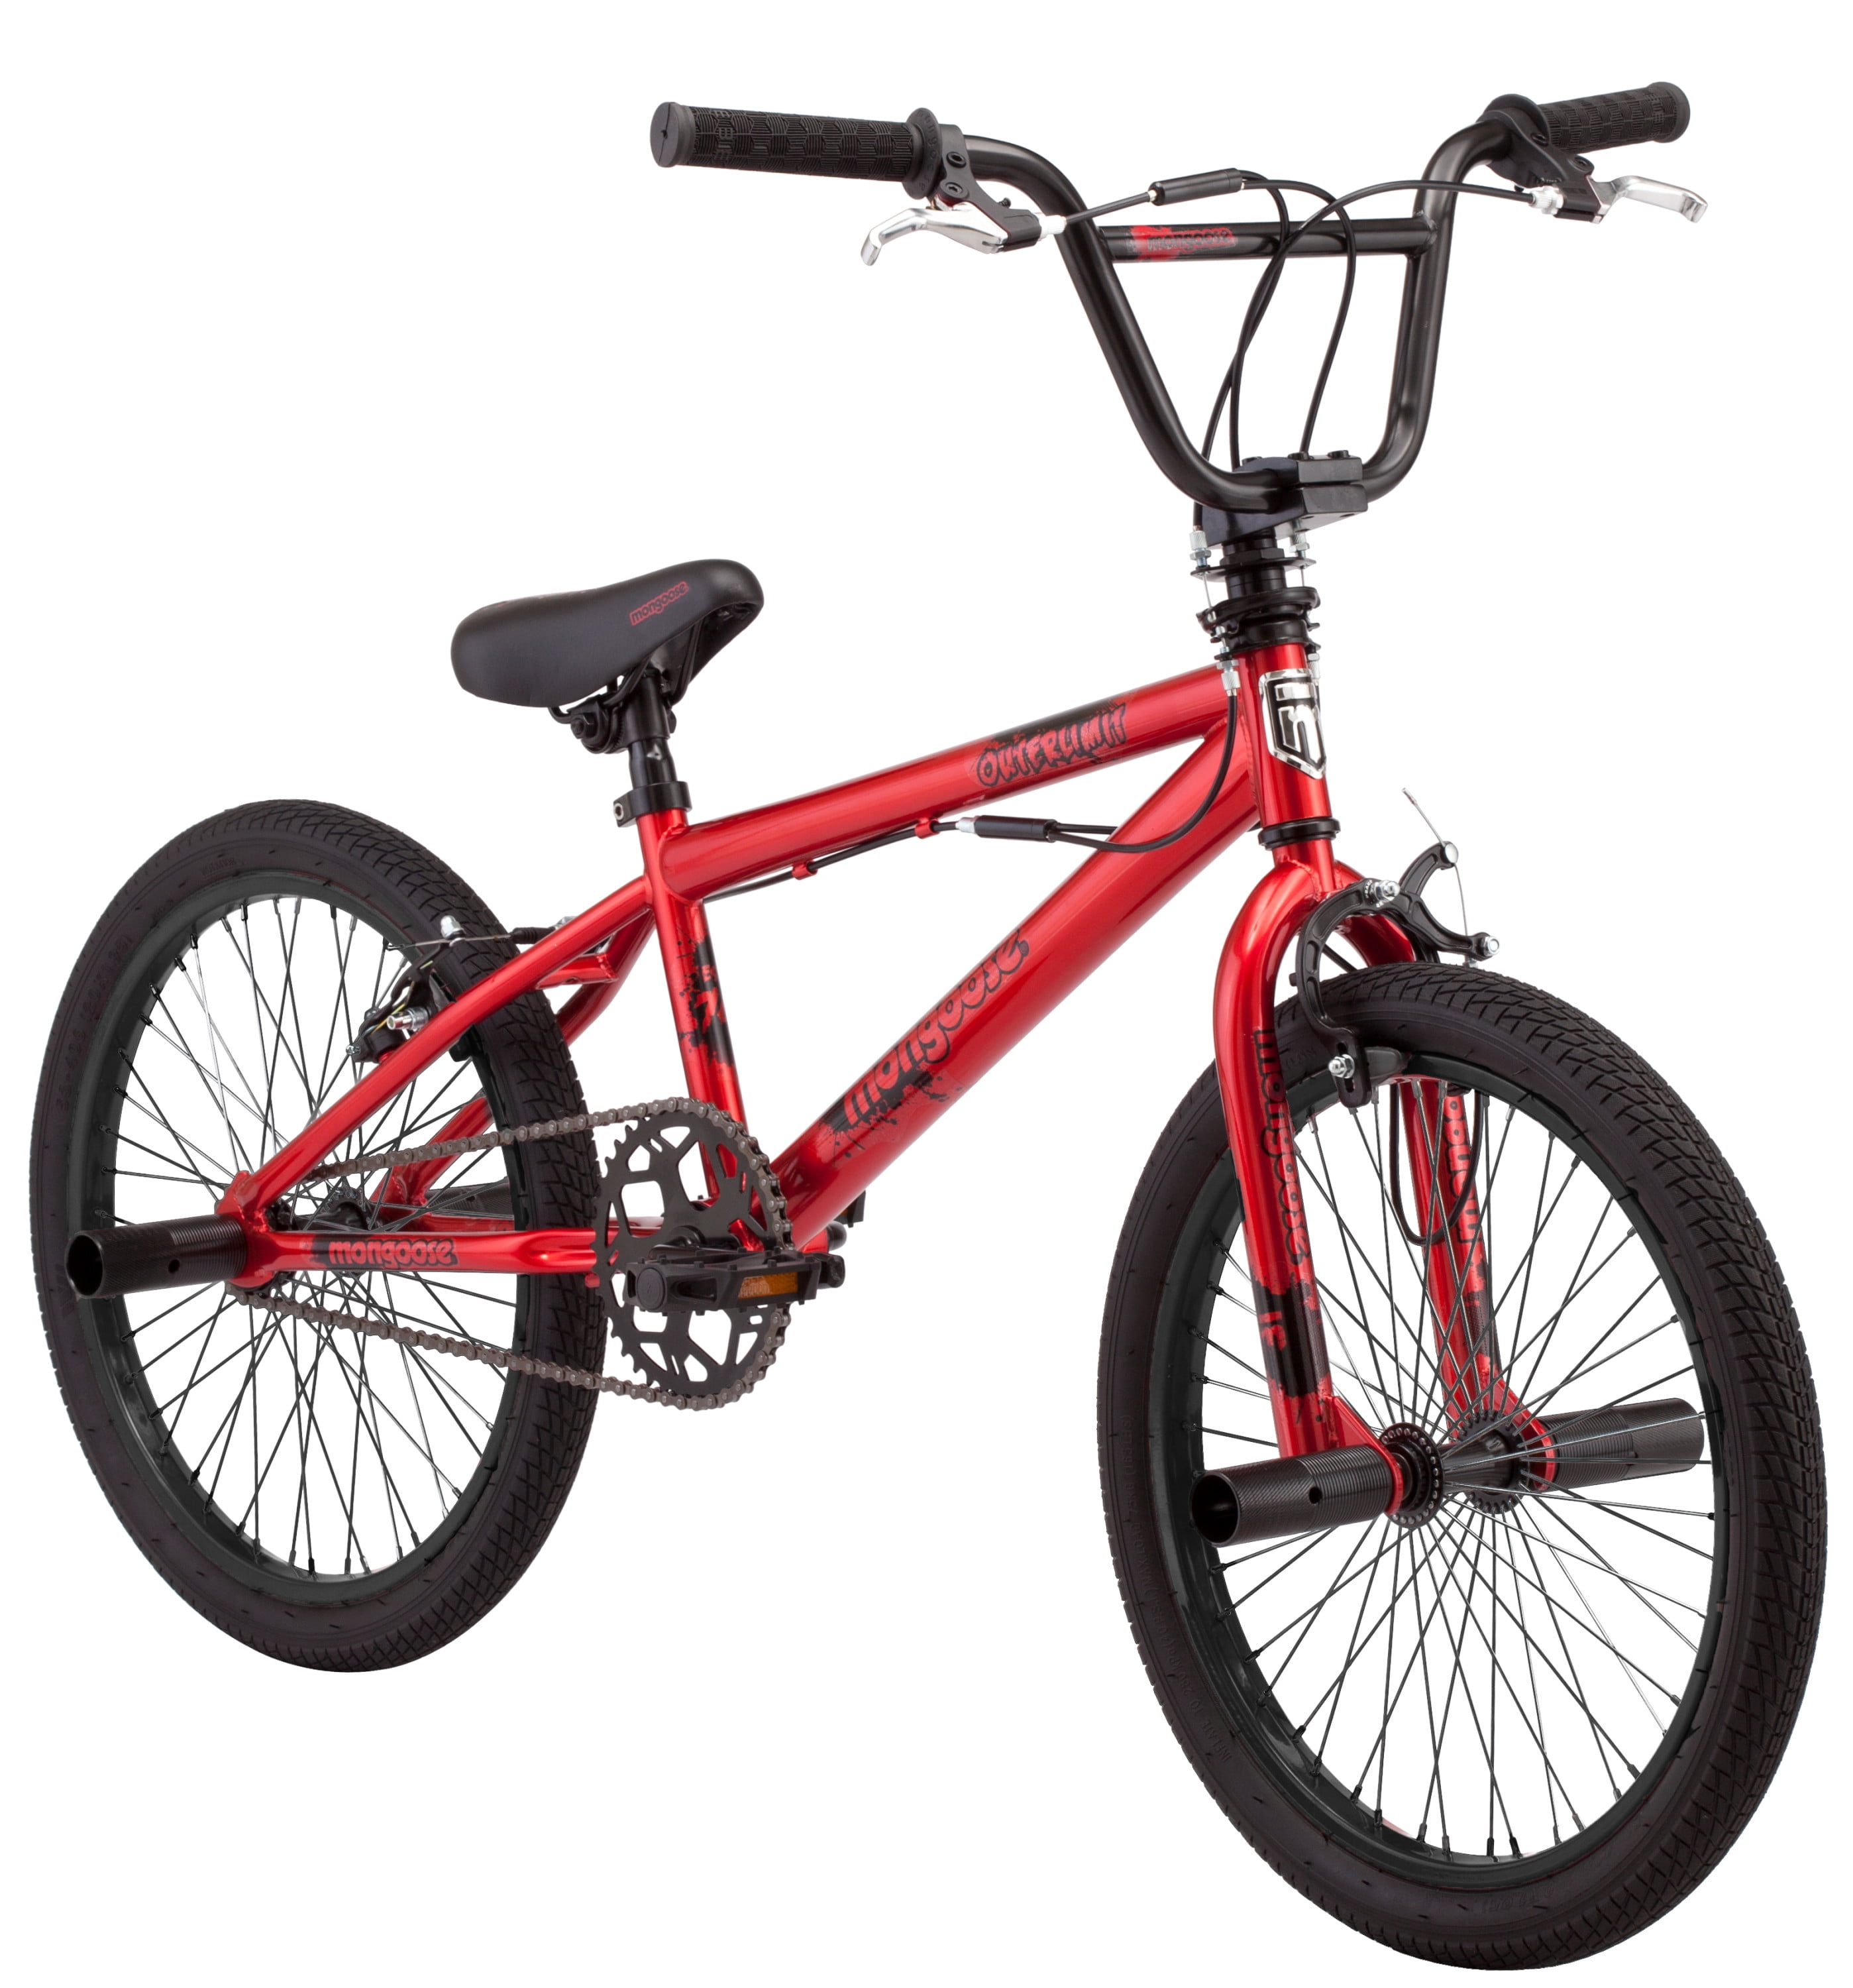 Mongoose 20" Outerlimit BMX Bike, Red BrickSeek